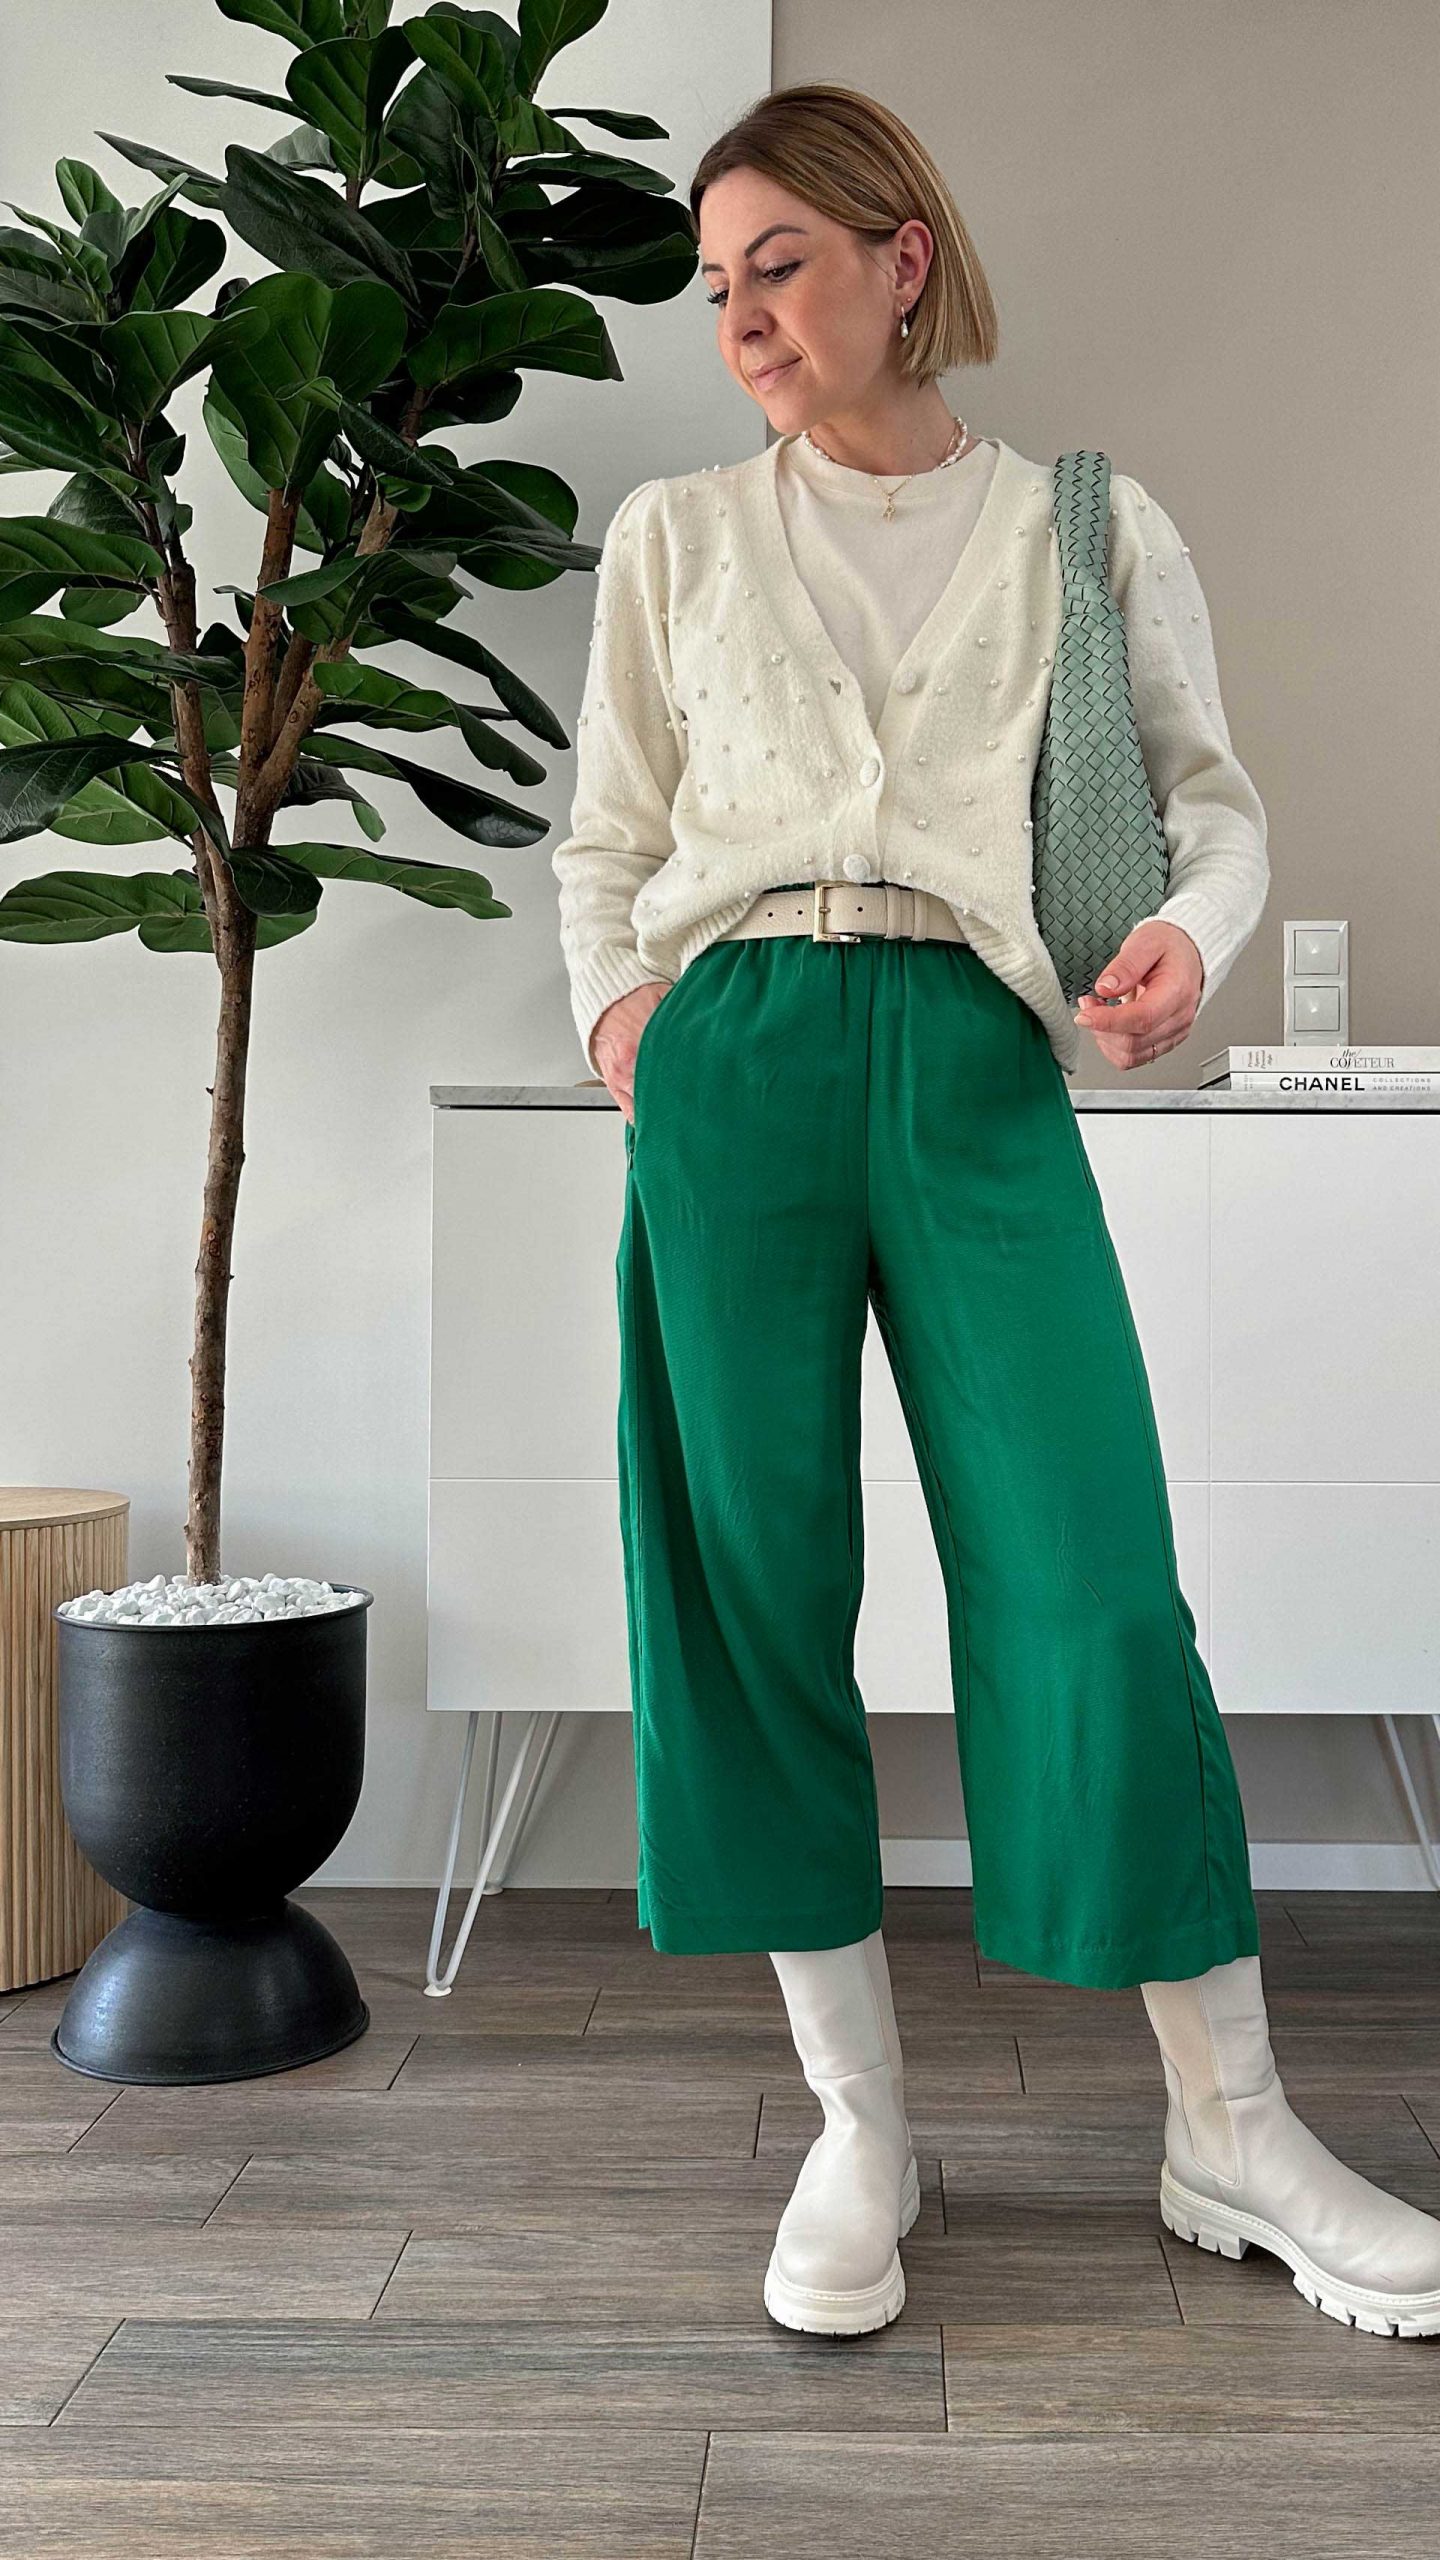 Grüne Culotte kombinieren mit neutralen Farben und Biker Boots. Am Fashionblog zeige ich dir 6 Outfit-Ideen für den Frühling. www.whoismocca.com